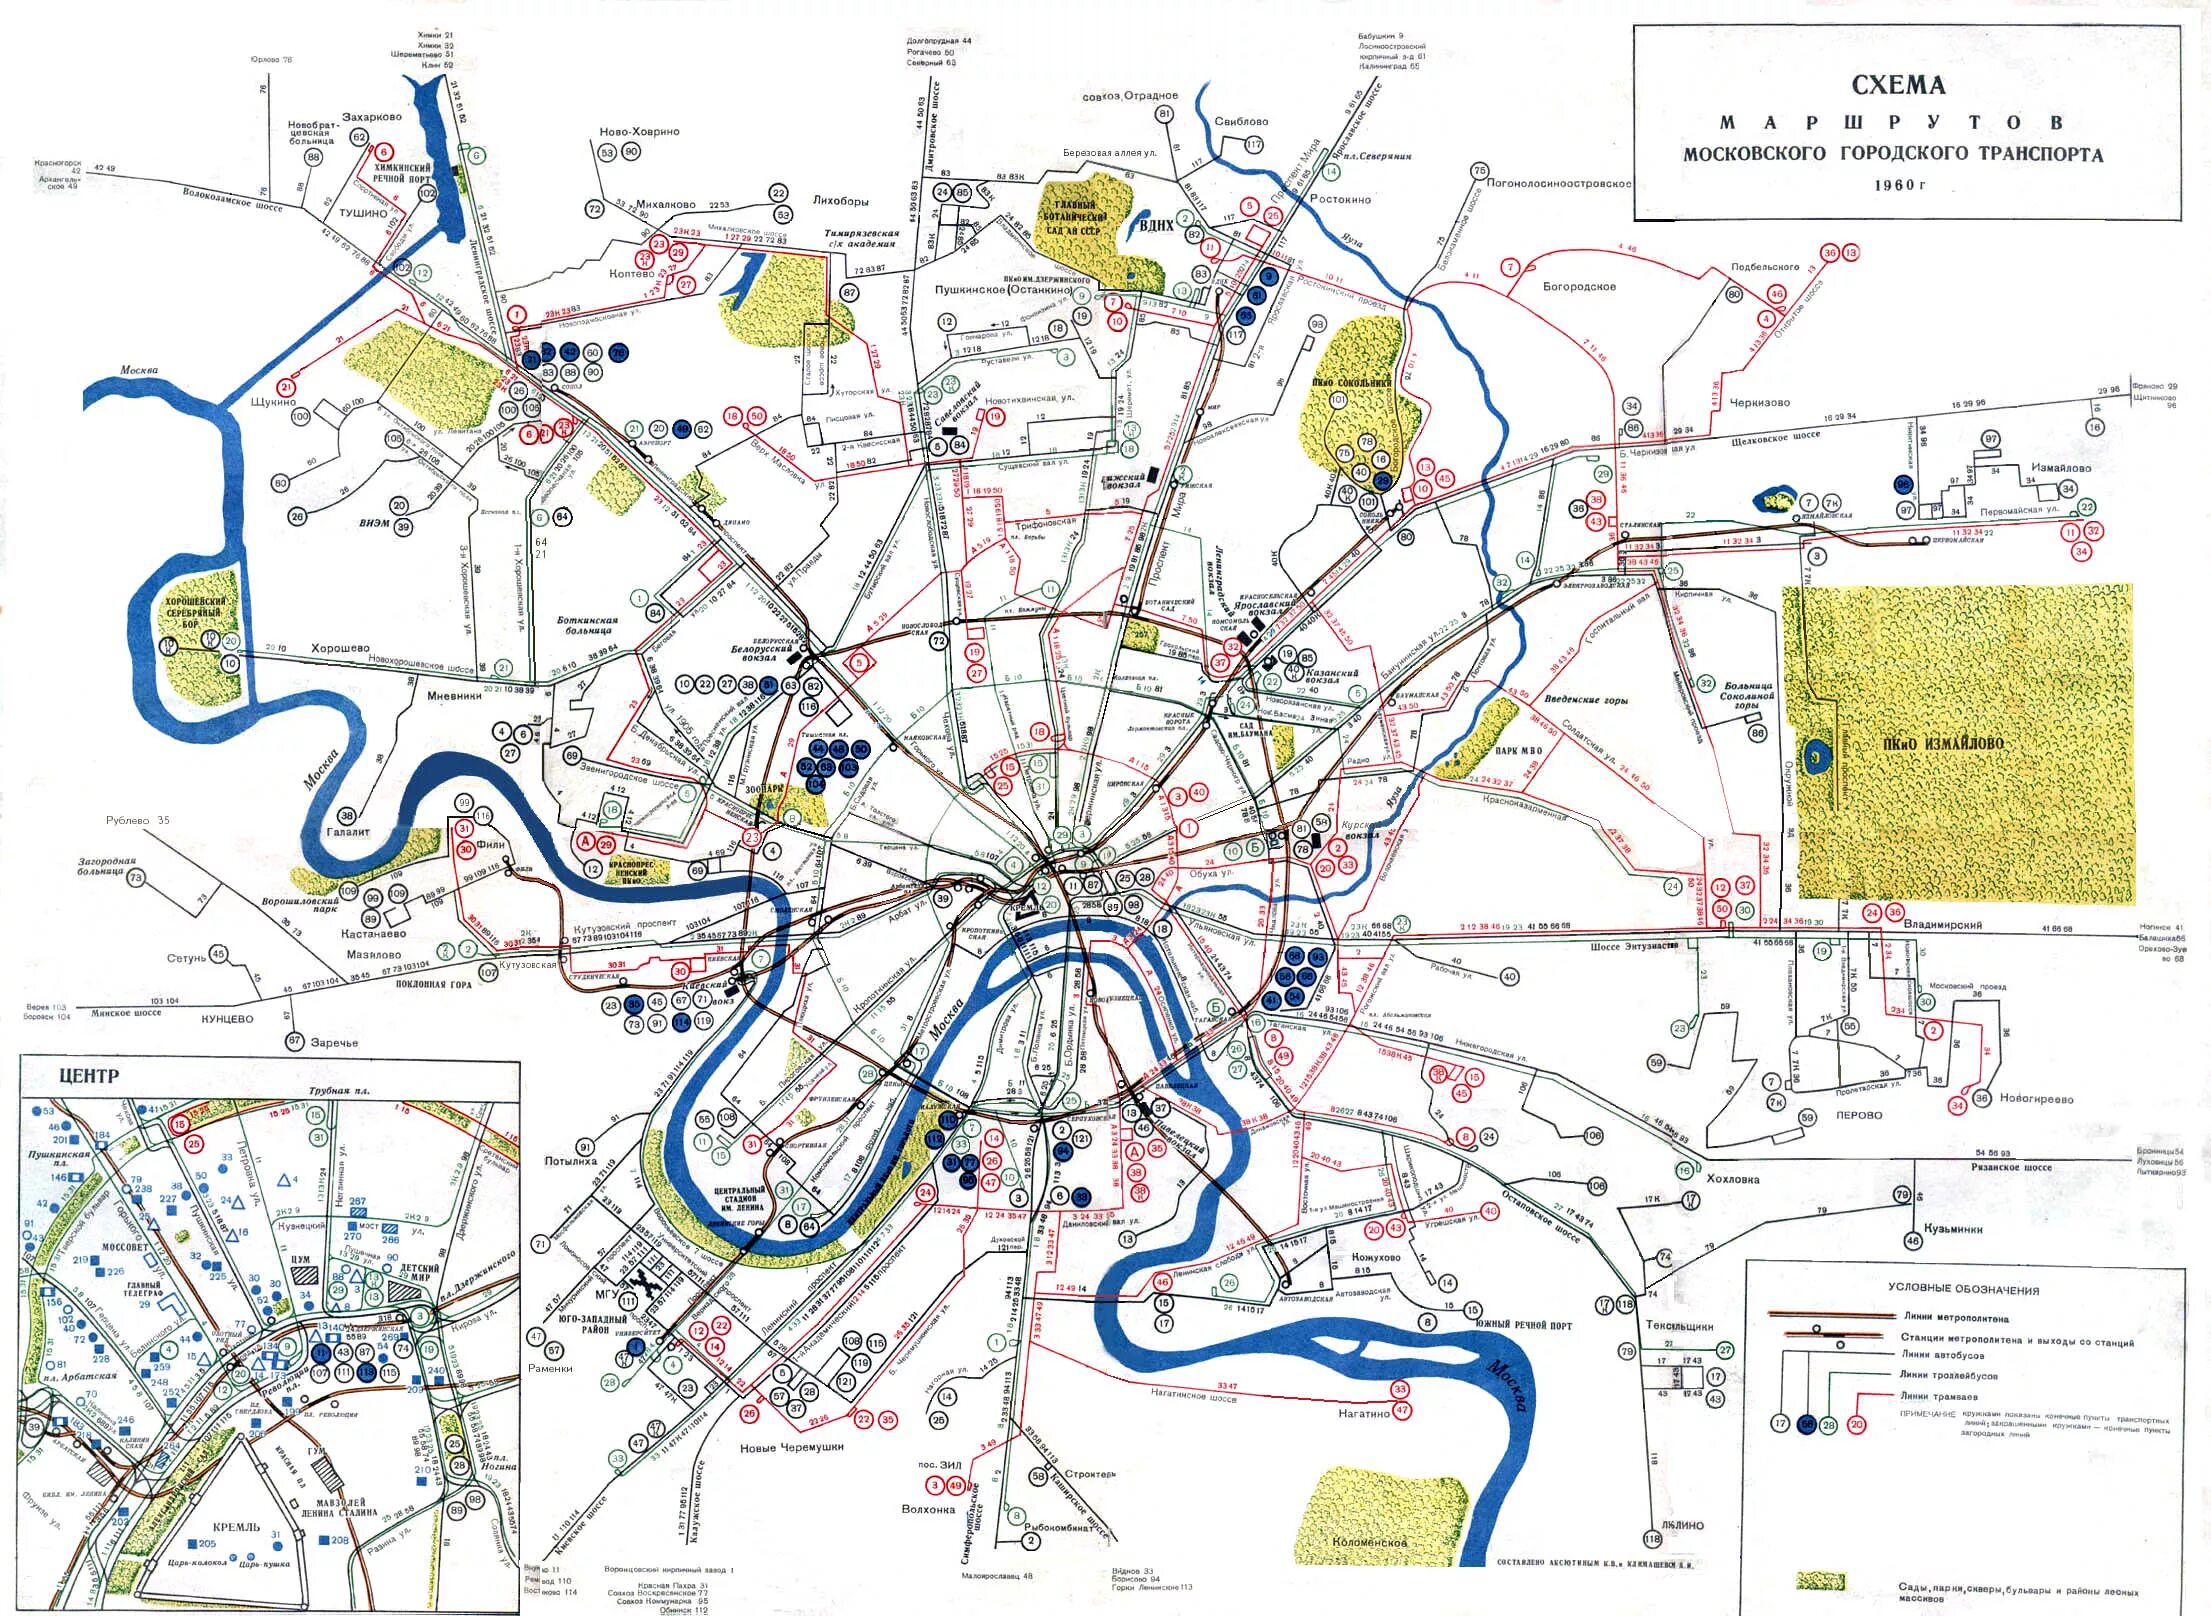 Схема маршрутов общественного транспорта Москвы. Карта общественного транспорта Москвы. Карта автобусов Москвы. Автобусы м в Москве схема маршрутов.